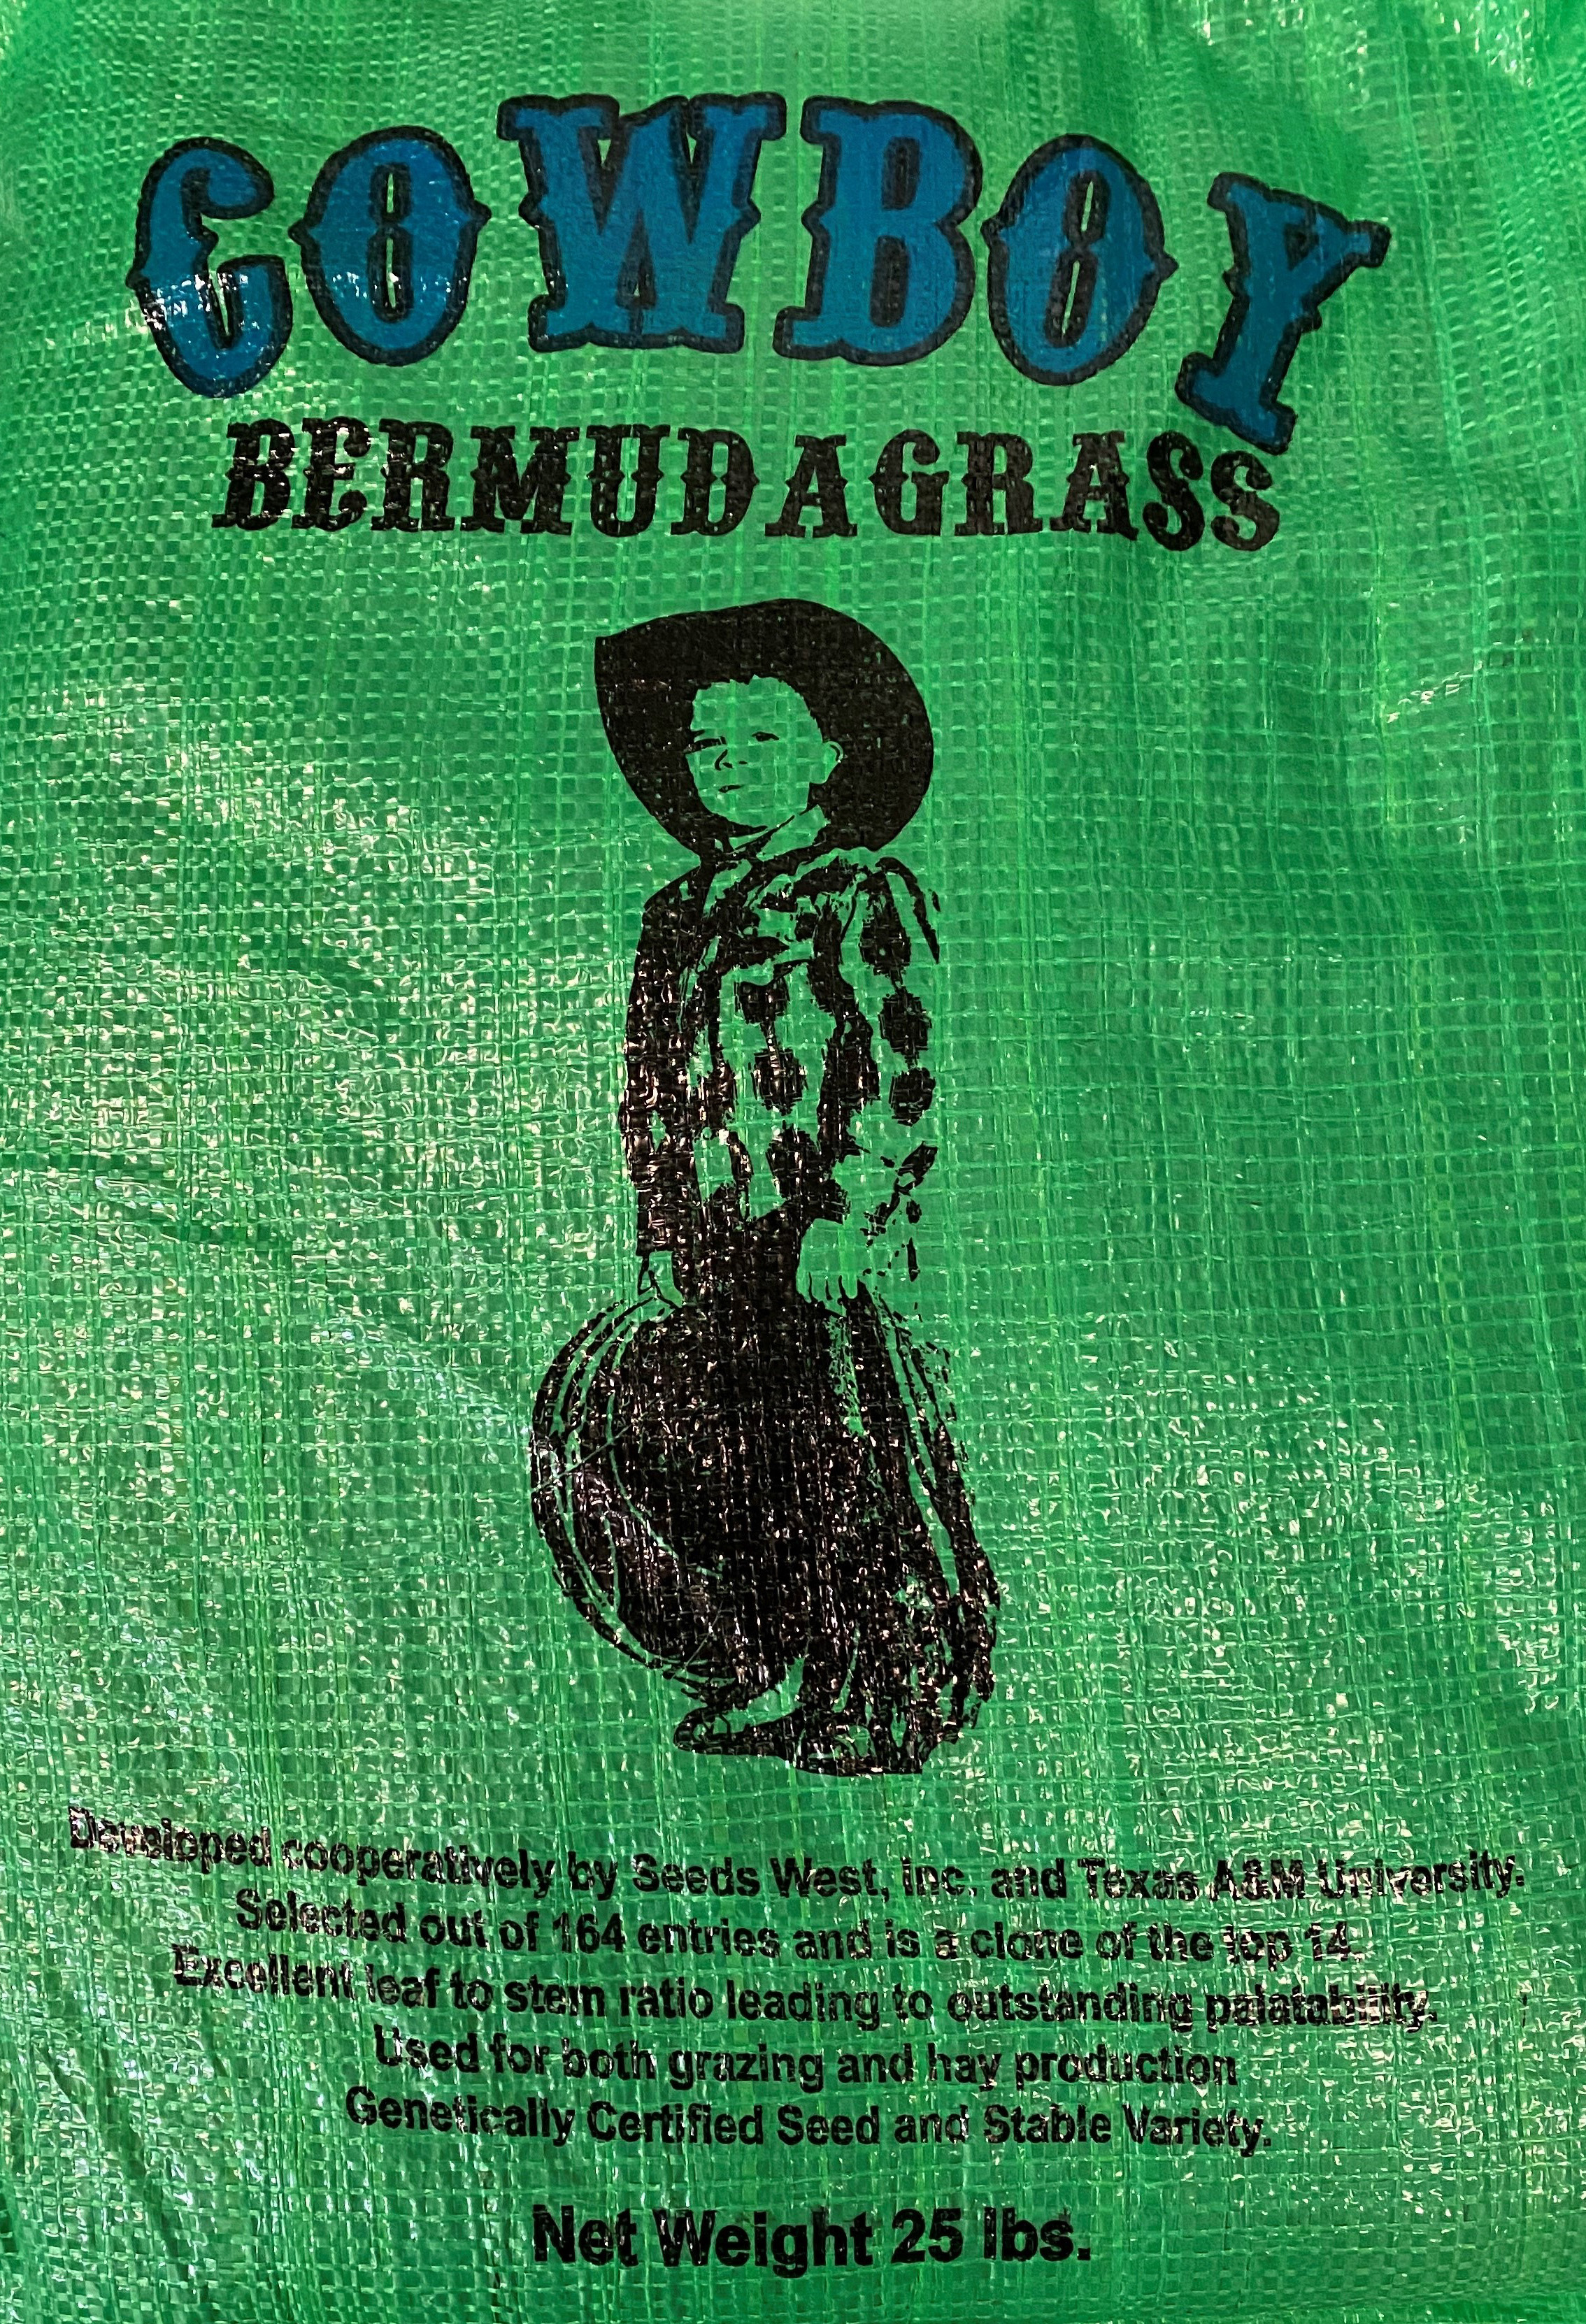 Cheyenne II Bermuda Grass Seed - Certified (Pre-Order) –